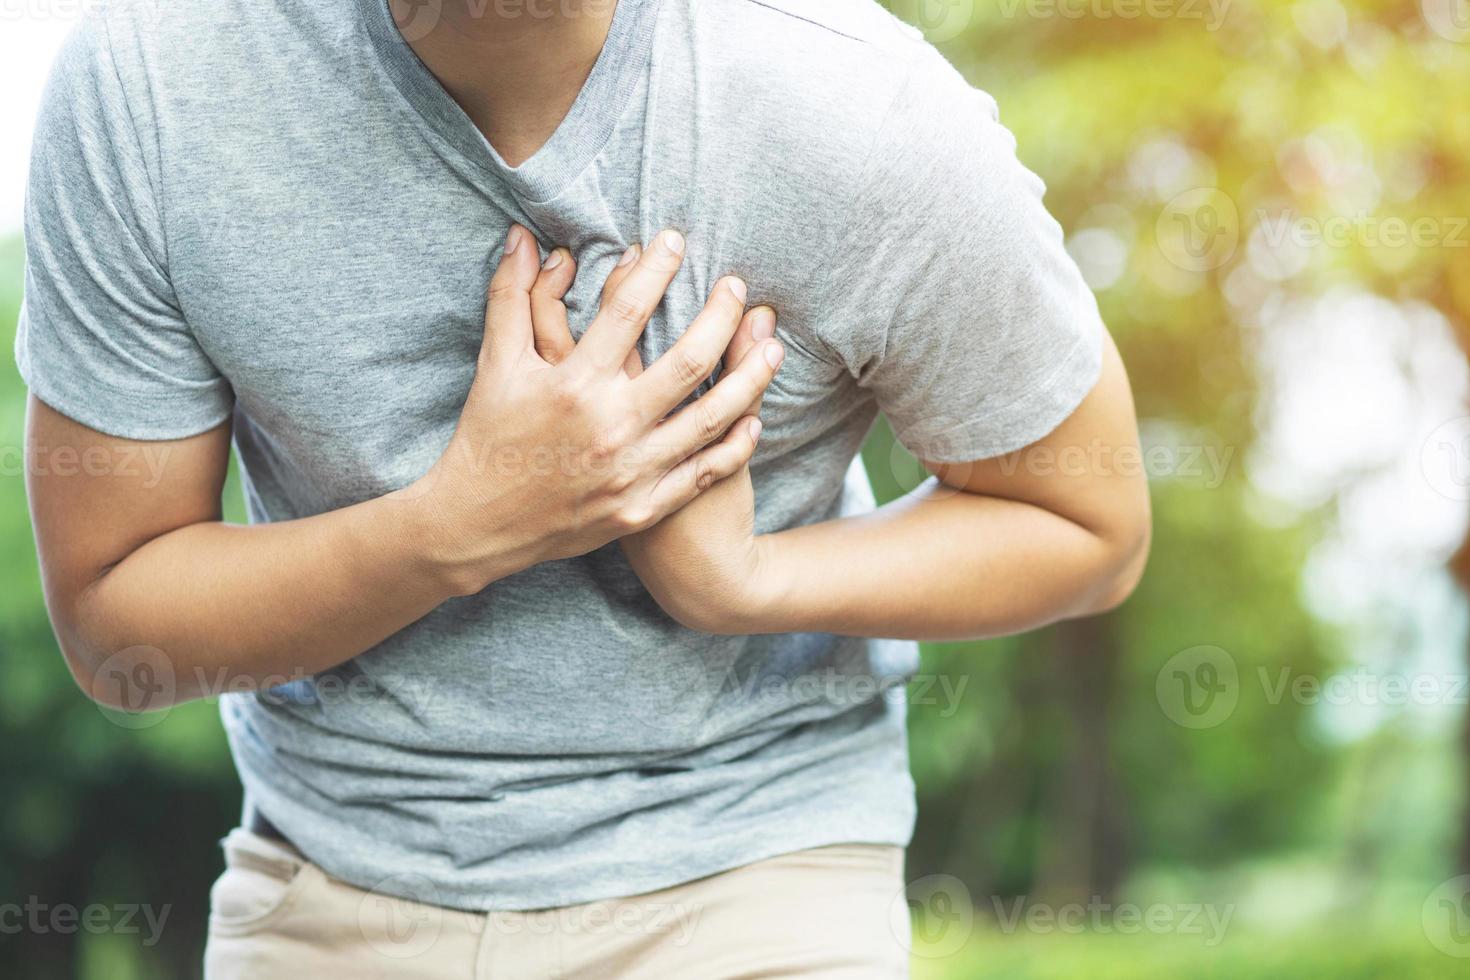 man har bröst smärta - hjärta ge sig på utomhus. eller tung övning orsaker de kropp till chocker hjärta sjukdom foto